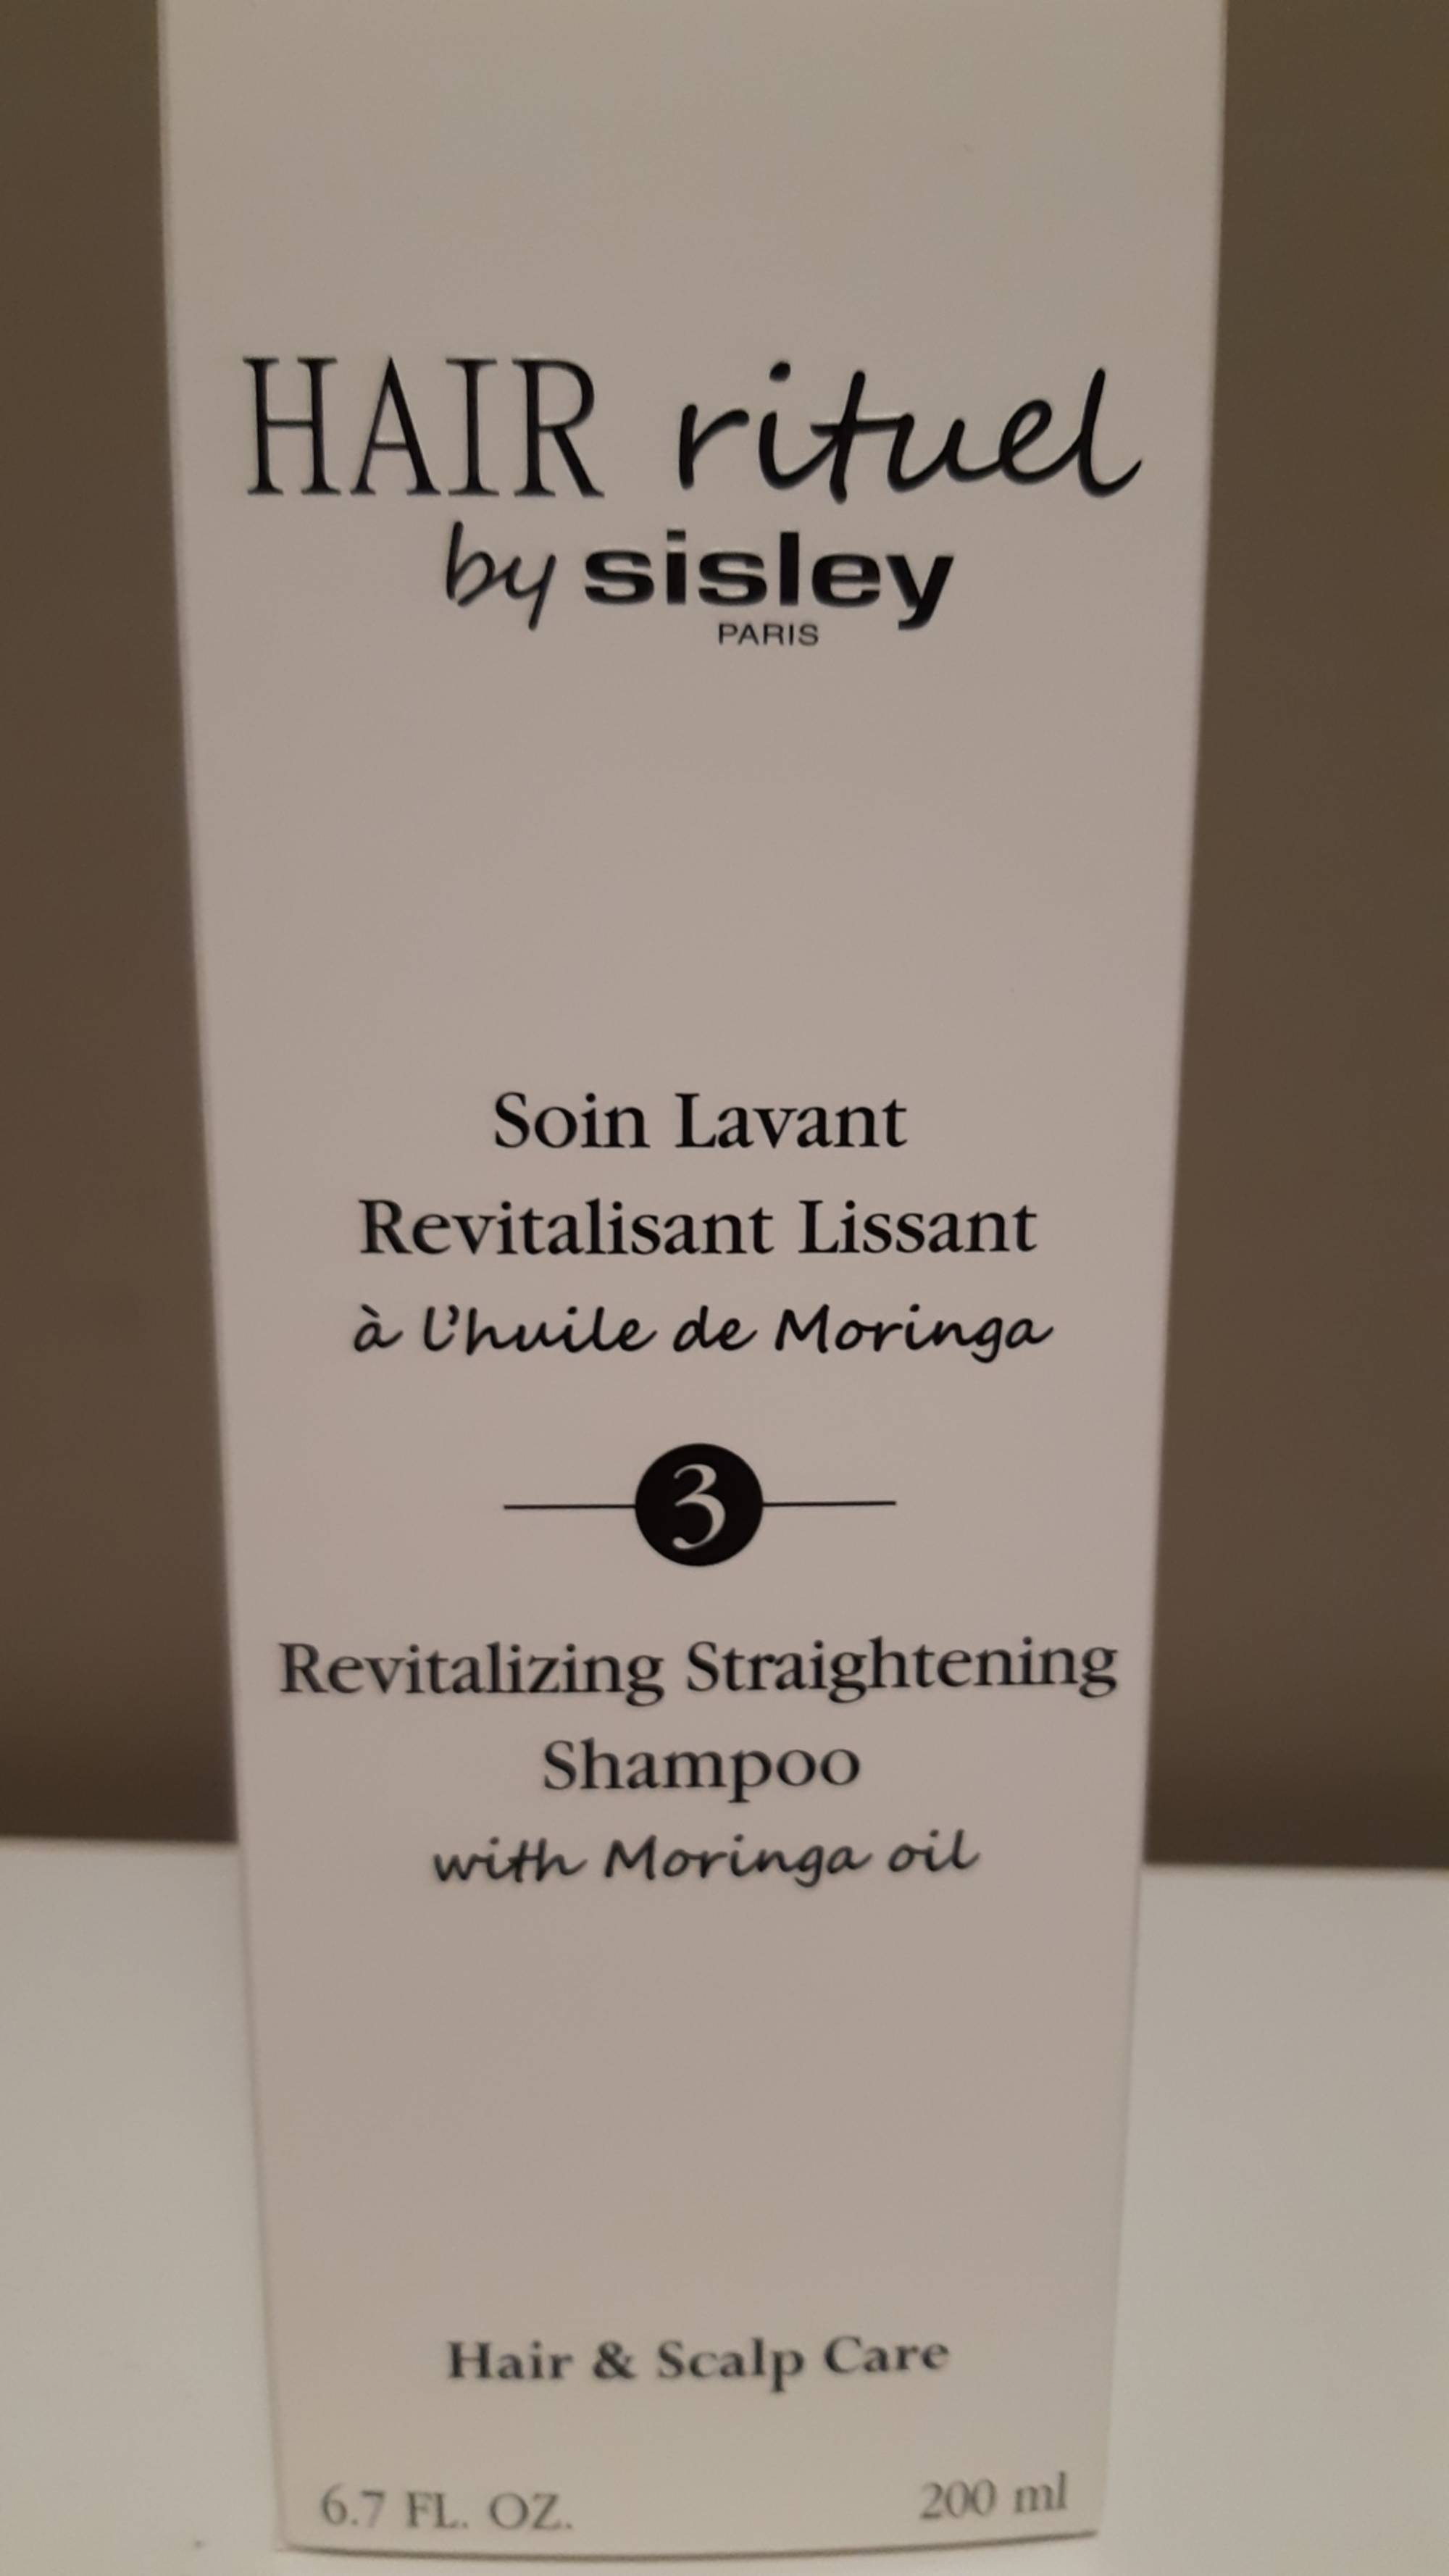 SISLEY - Hair rituel - Soin lavant revitalisant lissant 3